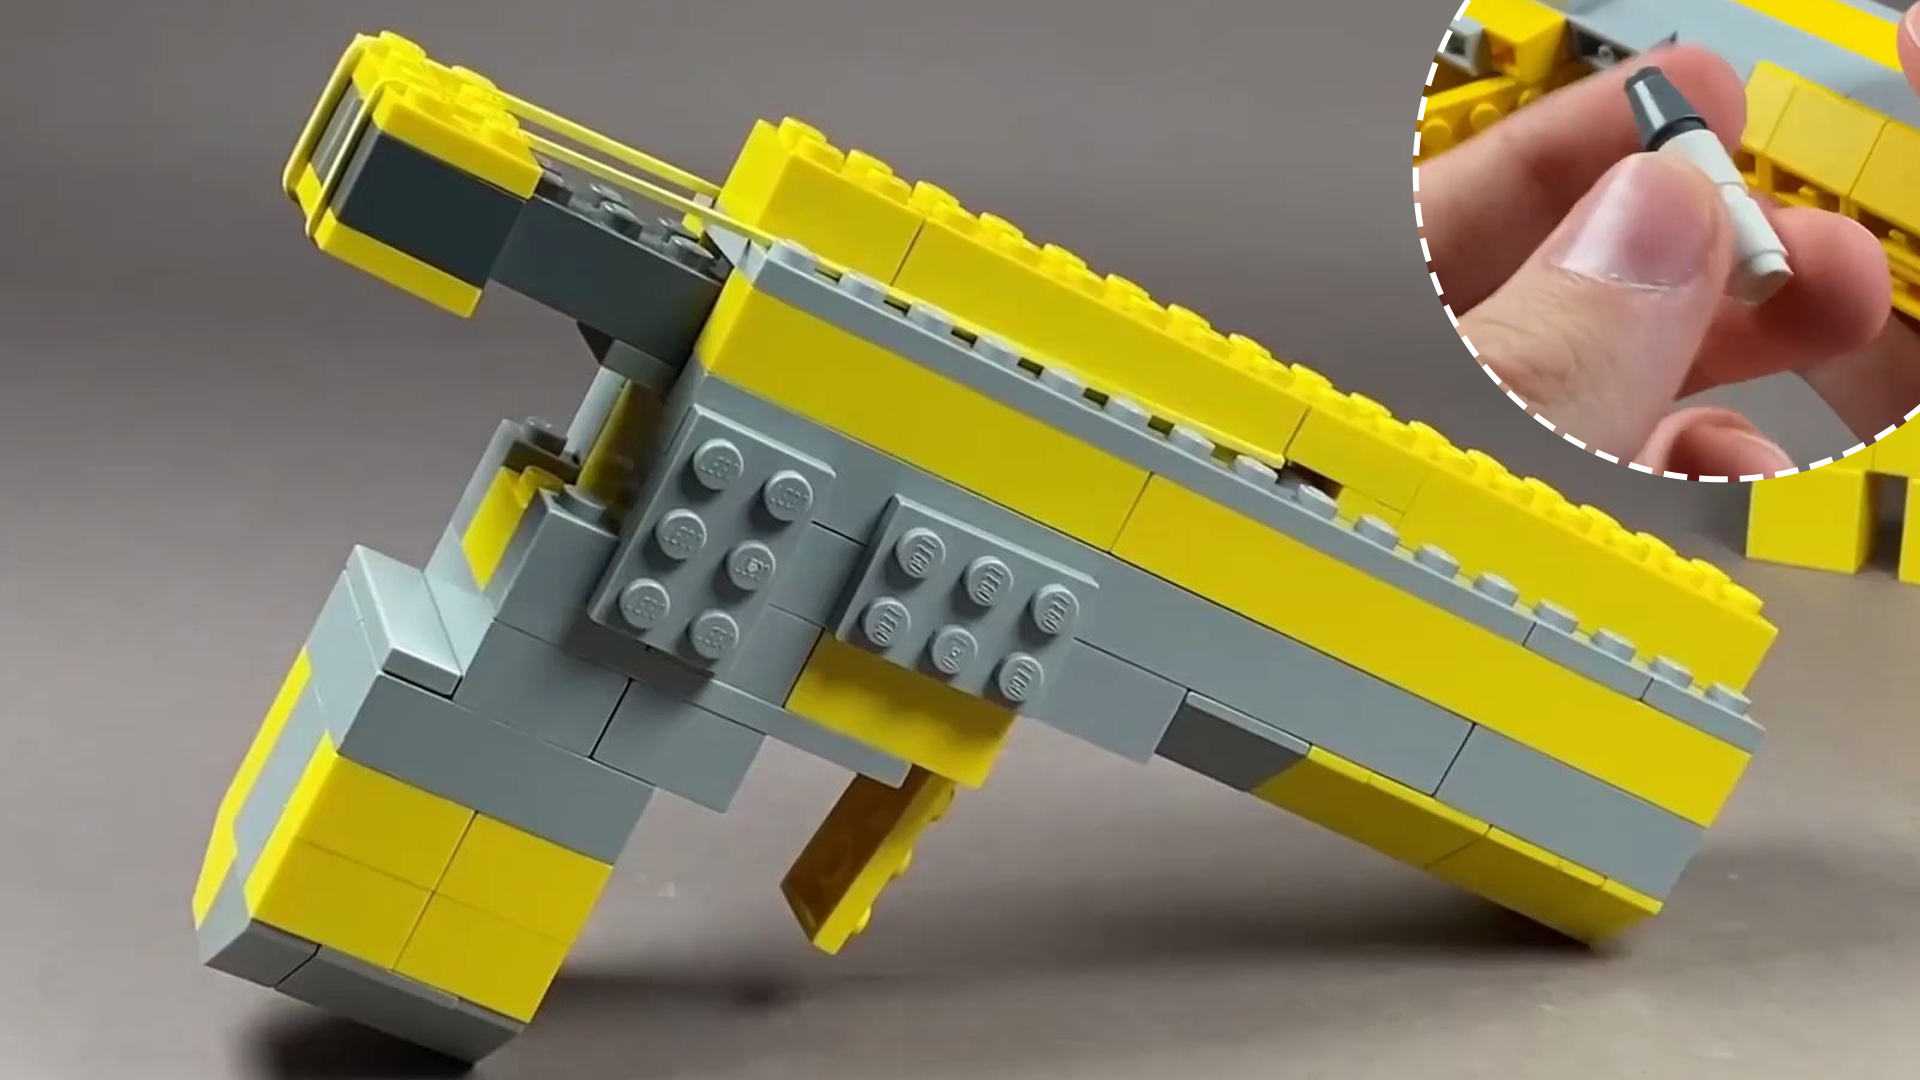 Lắp Súng Lego: Tạo ra những chiếc súng hấp dẫn của riêng mình với bộ lắp ráp Lego đầy sáng tạo và thú vị. Qua từng bước lắp ráp, bạn sẽ nâng cao khả năng tư duy và trau dồi các kỹ năng thủ công tuyệt vời.